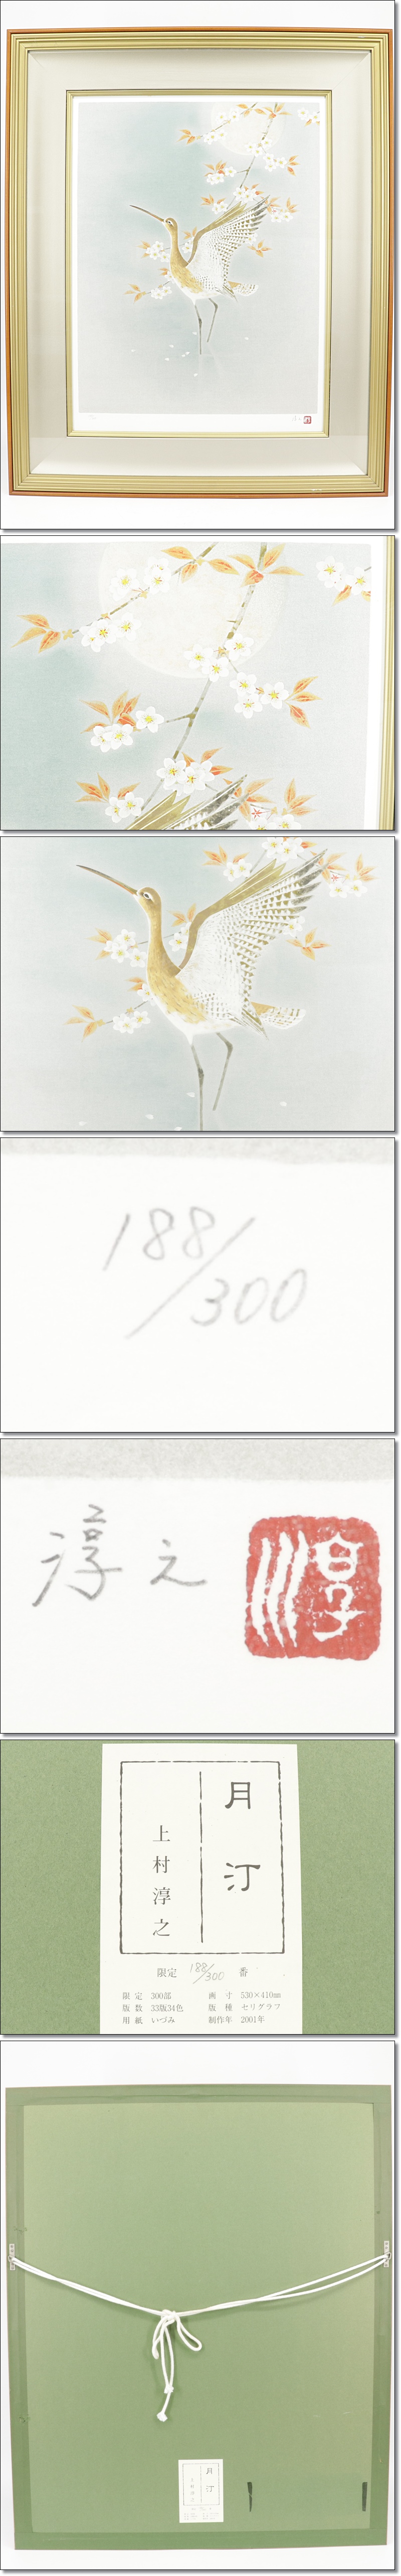 激安人気上村淳之「月汀」 188/300 セリグラフ 10号 直筆サイン 夜桜 鳥 E217 シルクスクリーン